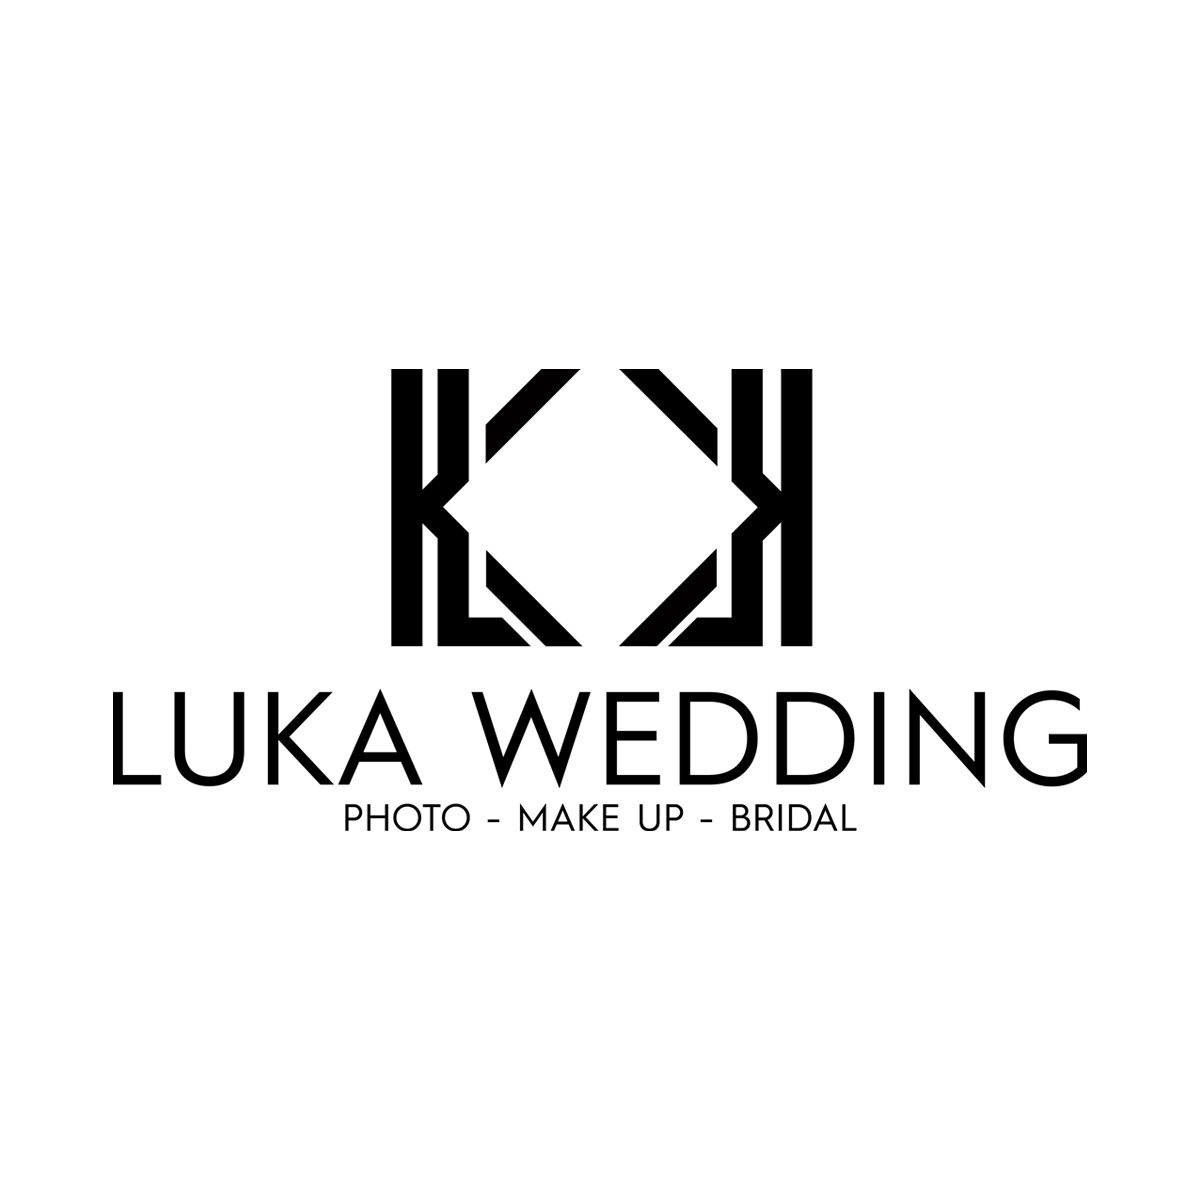 Luka Wedding